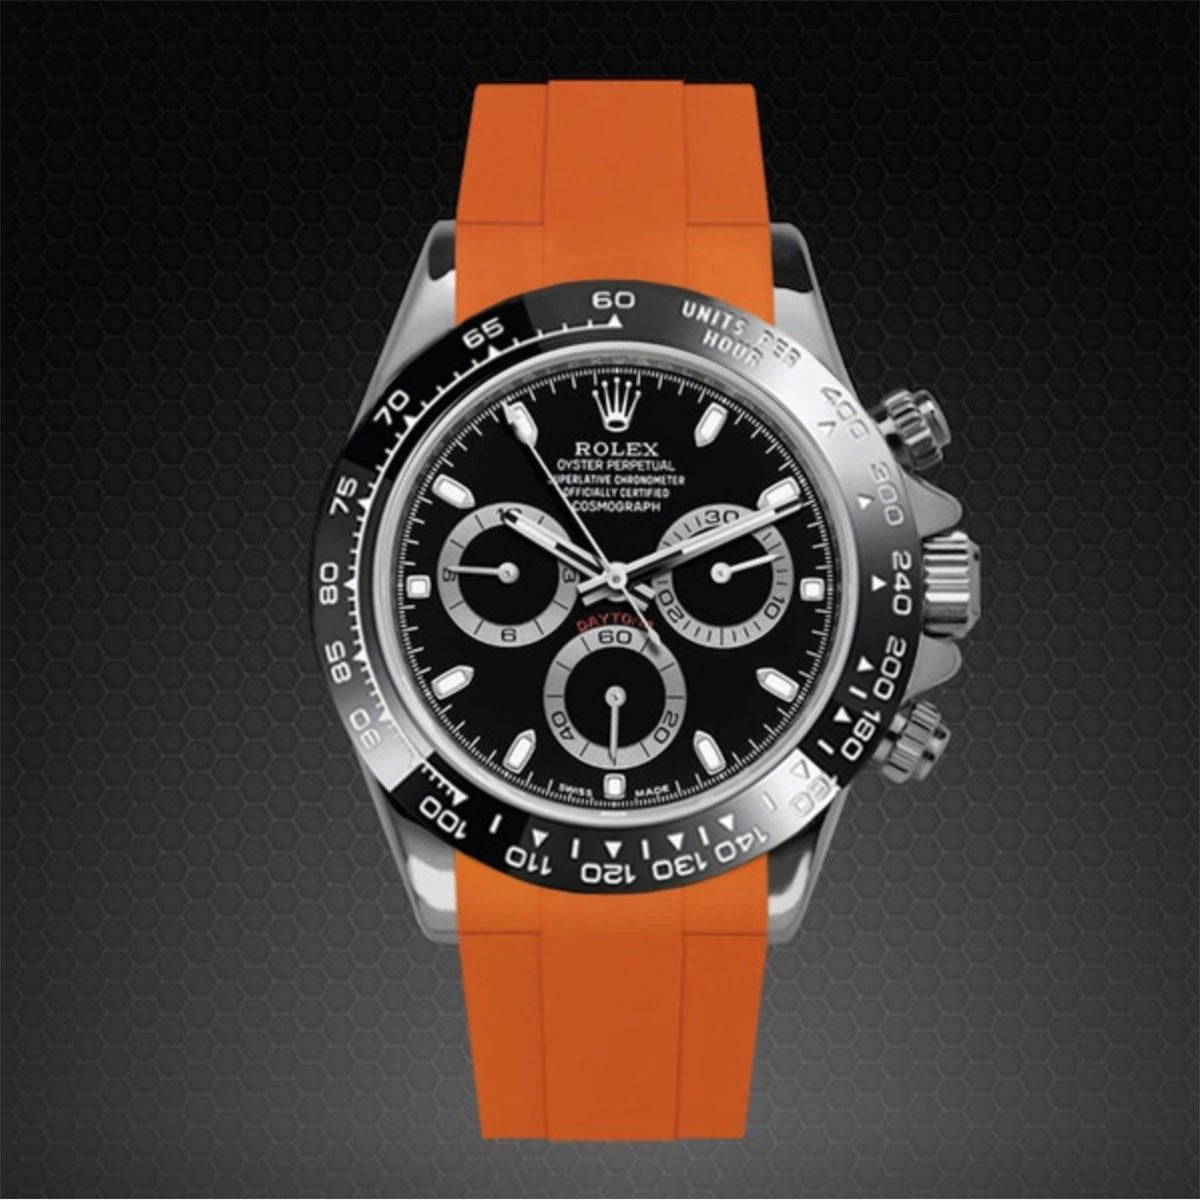 Rolex - Rubber B - Bracelet caoutchouc Daytona Ceramic Bezel Oyster Bracelet - Série classique - watch band leather strap - ABP Concept -